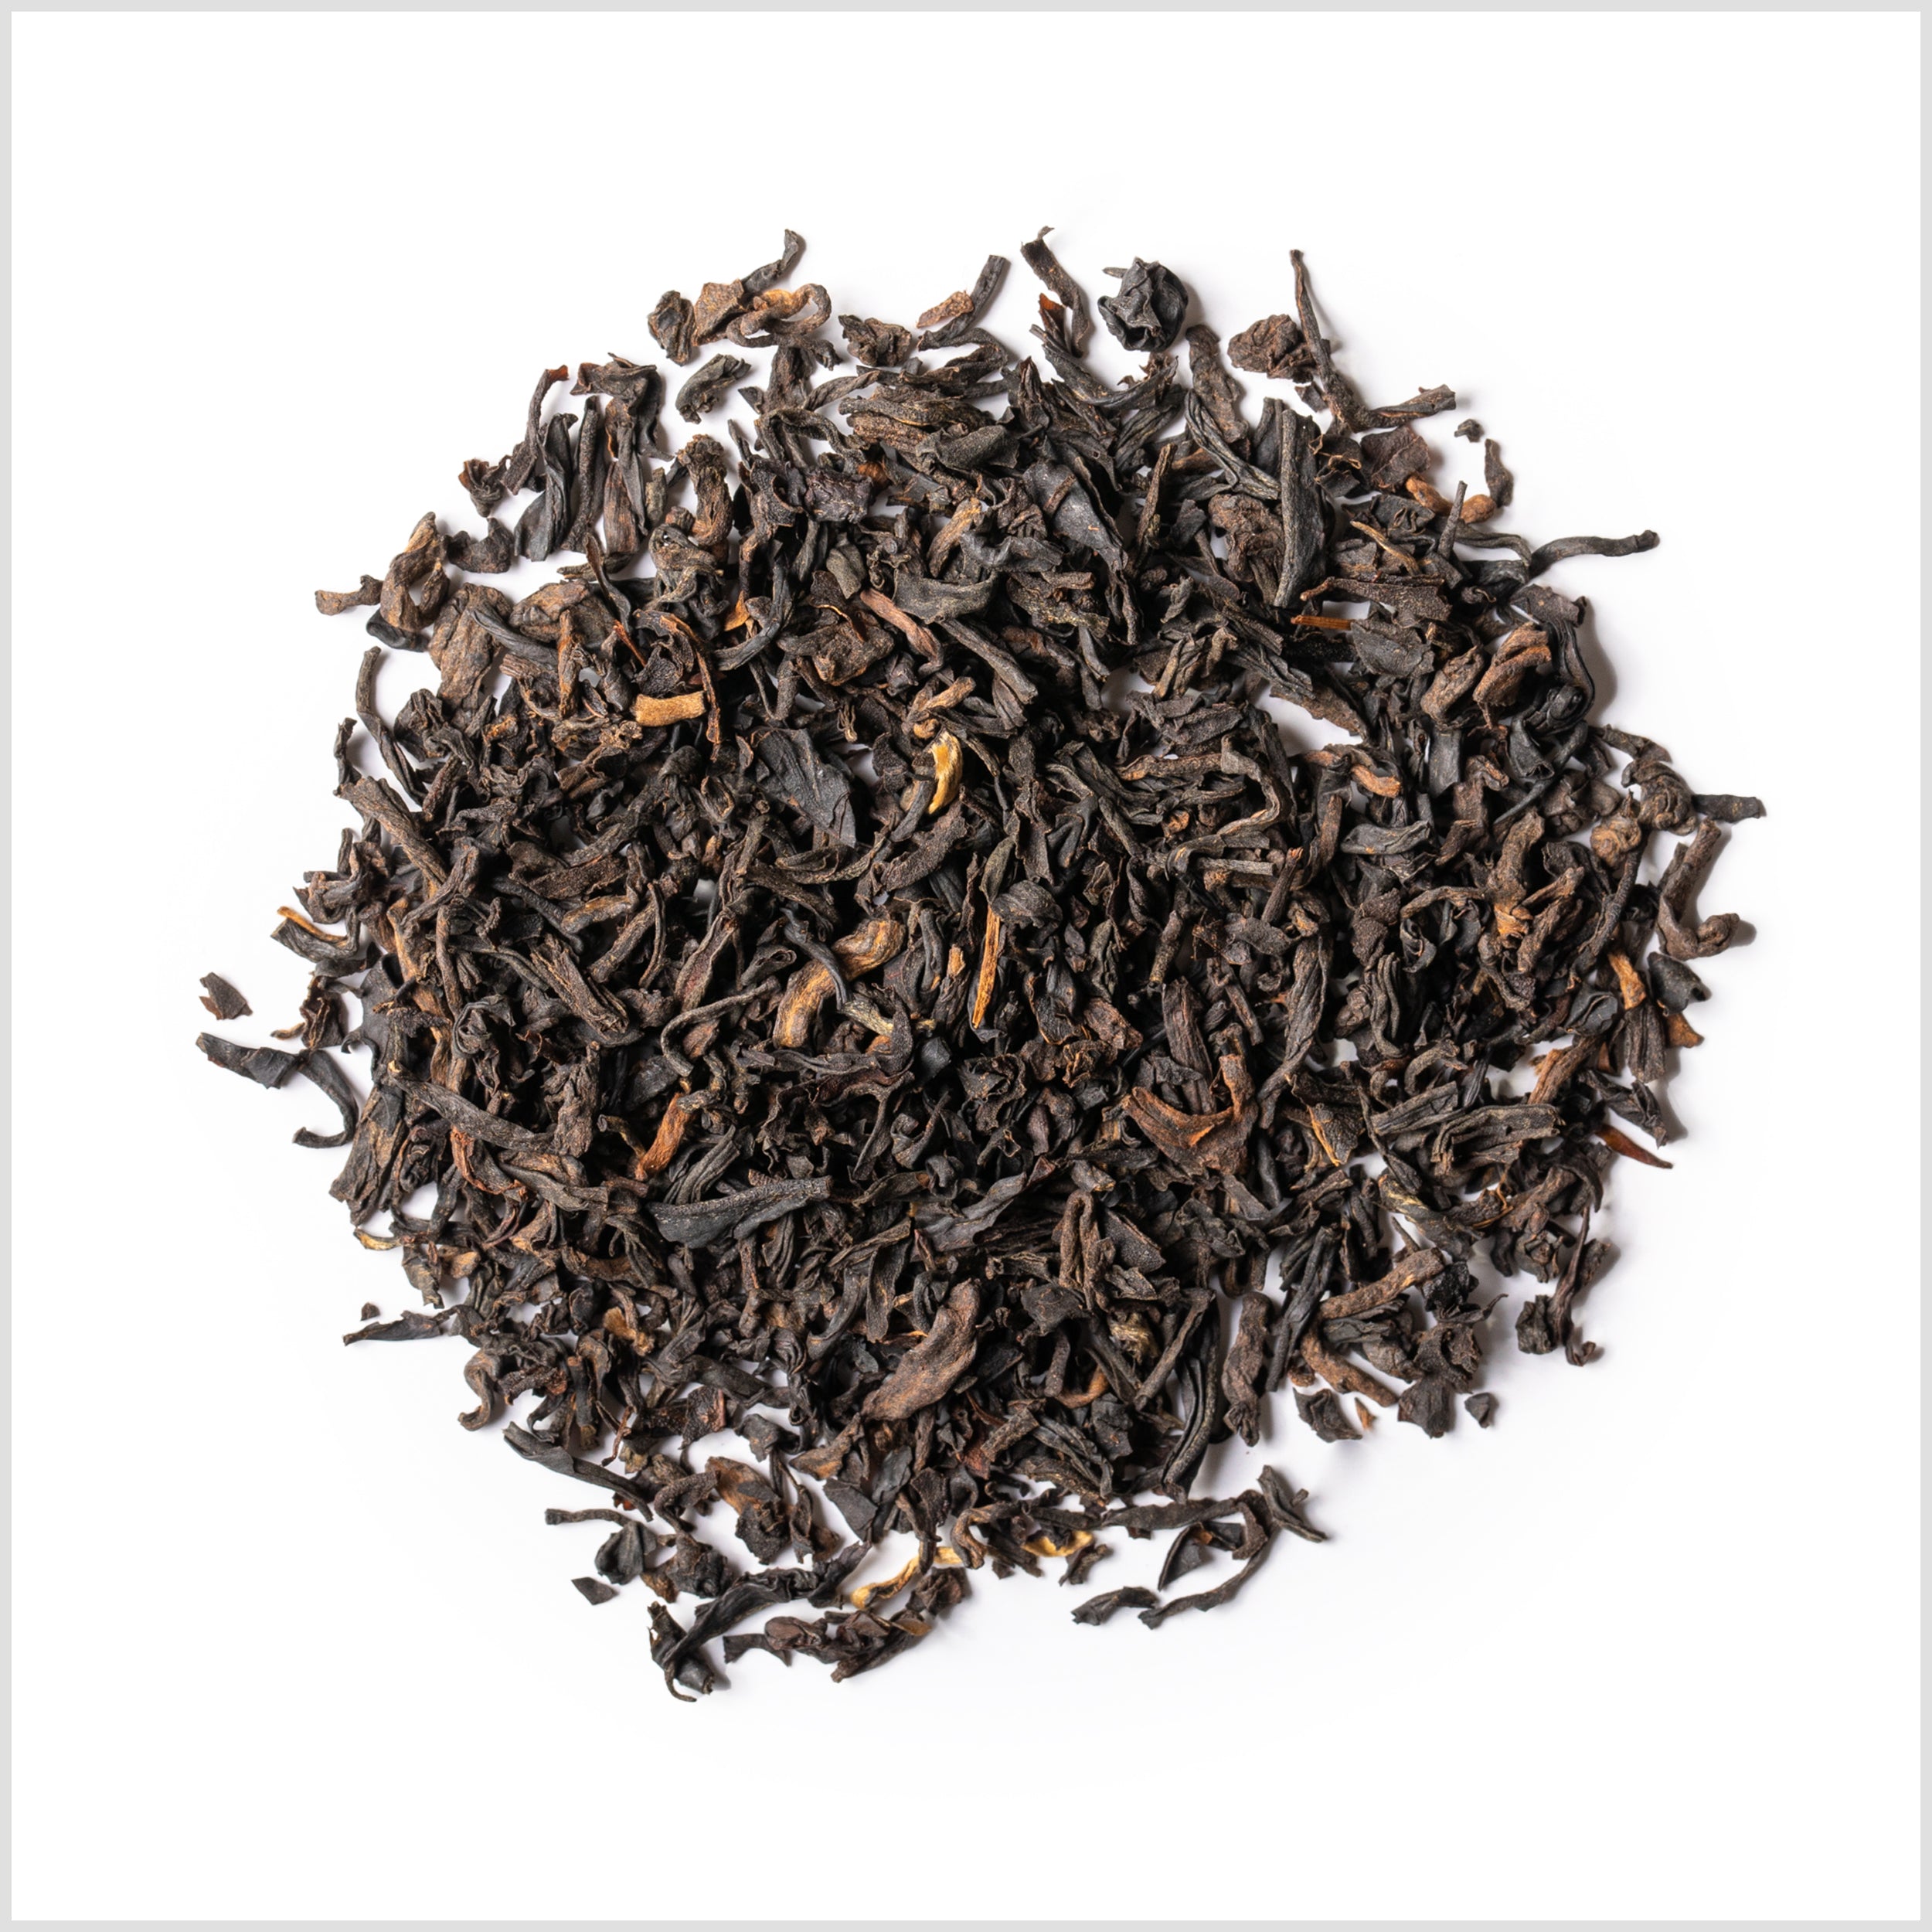 Circular pile of loose black tea.